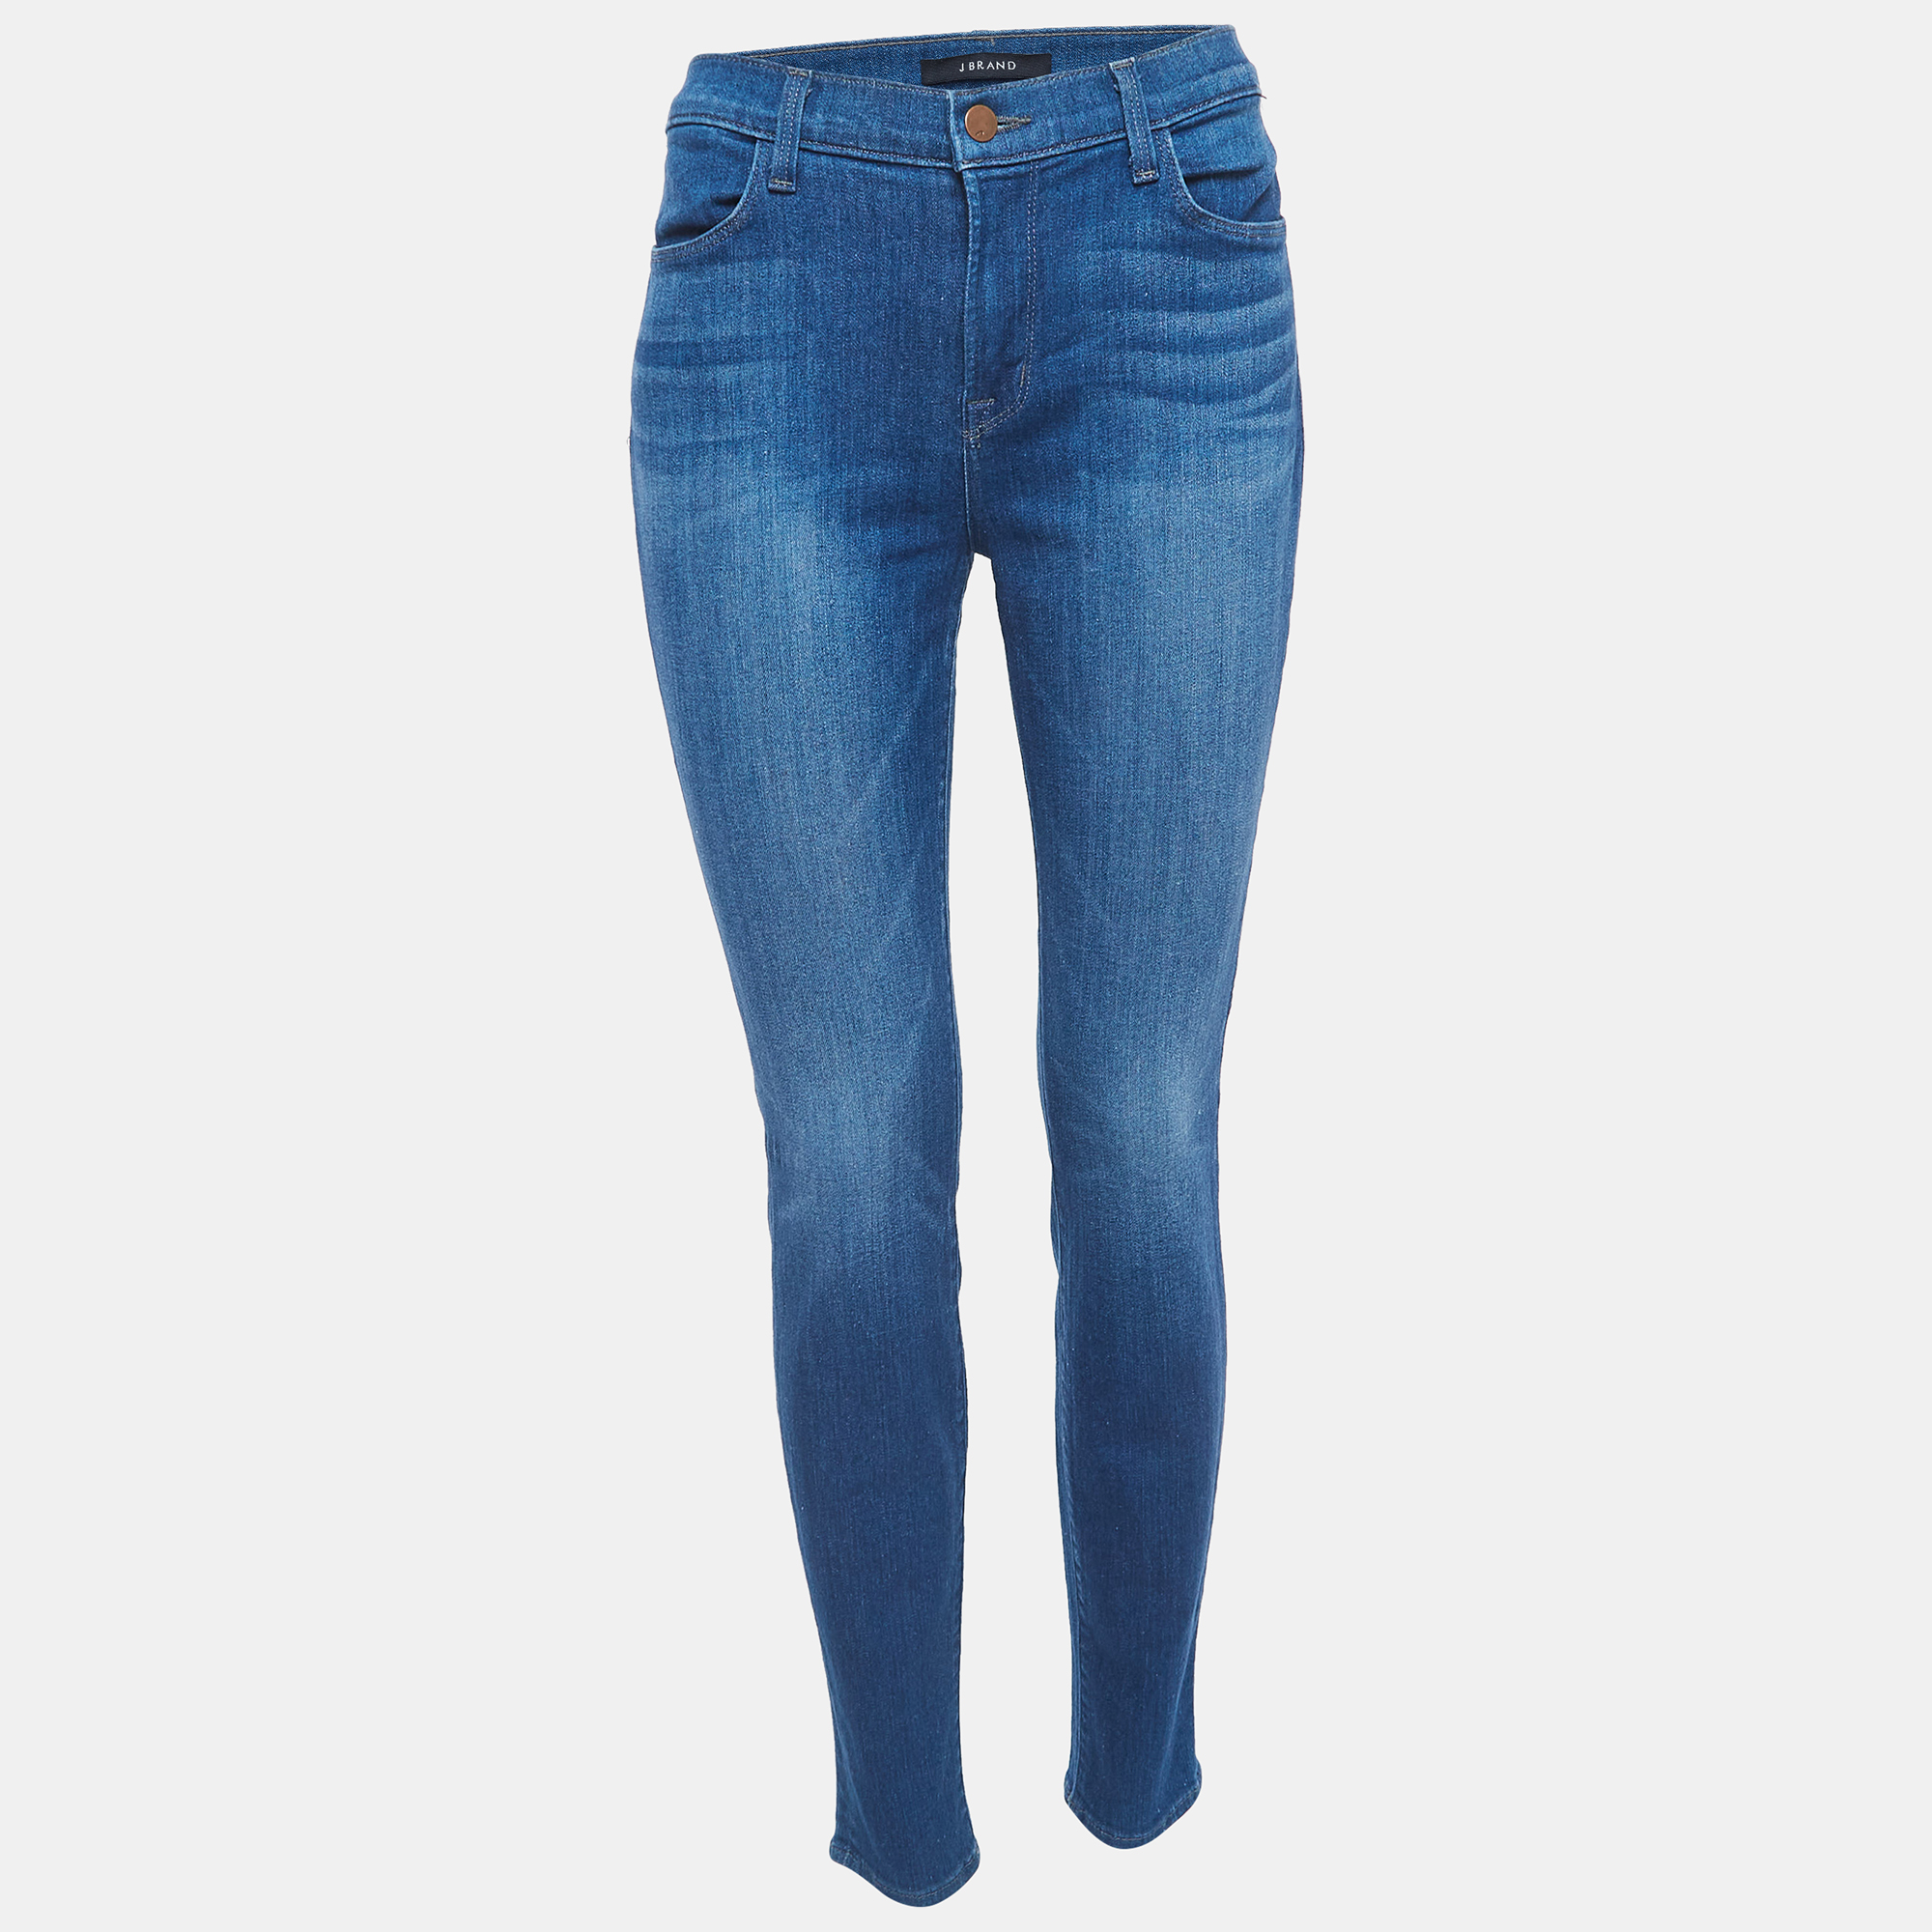 J brand blue denim super skinny jeans l waist 31"